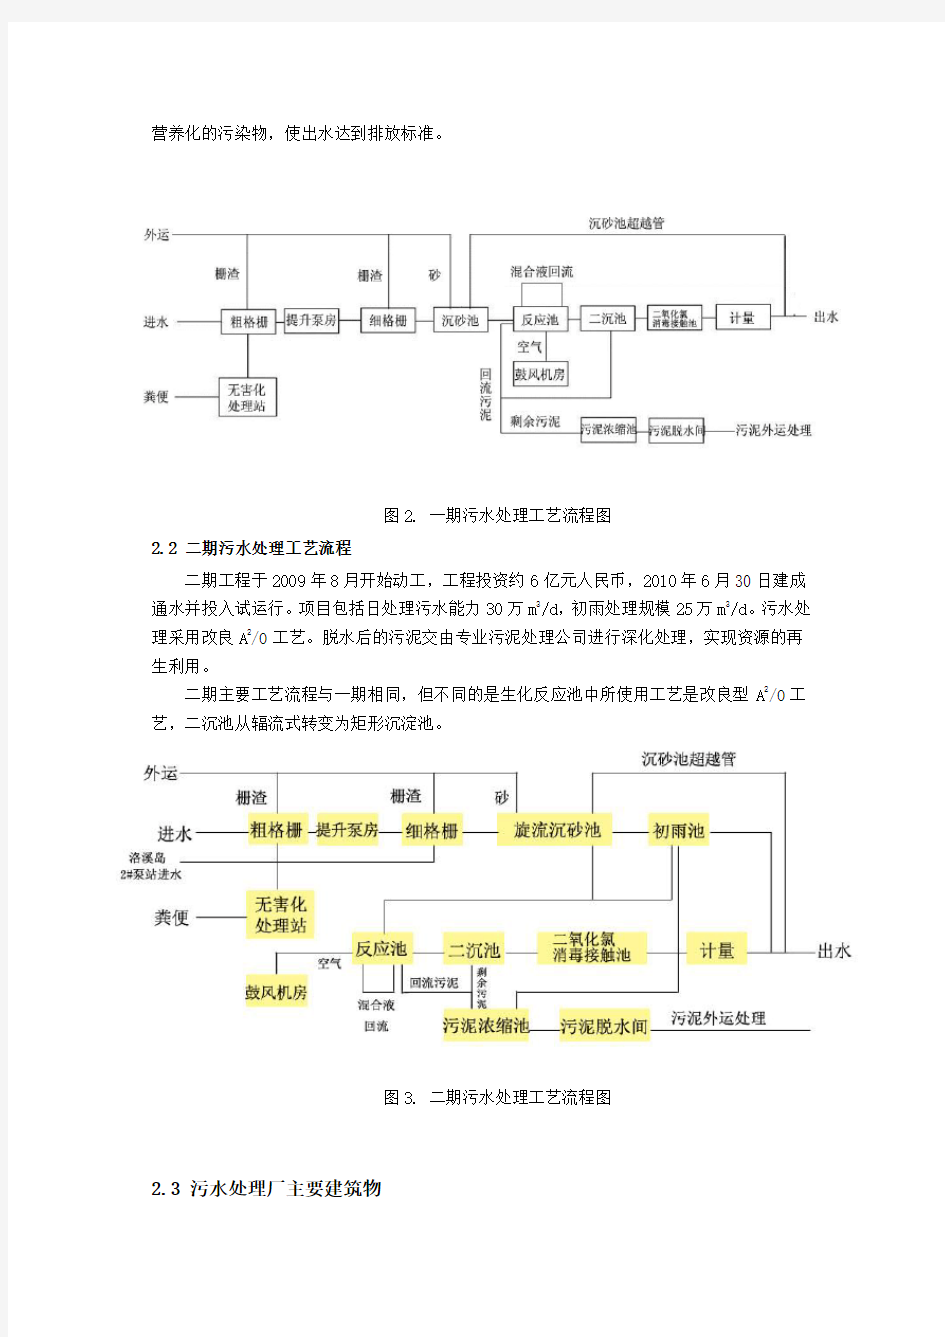 广州市沥滘污水处理厂报告